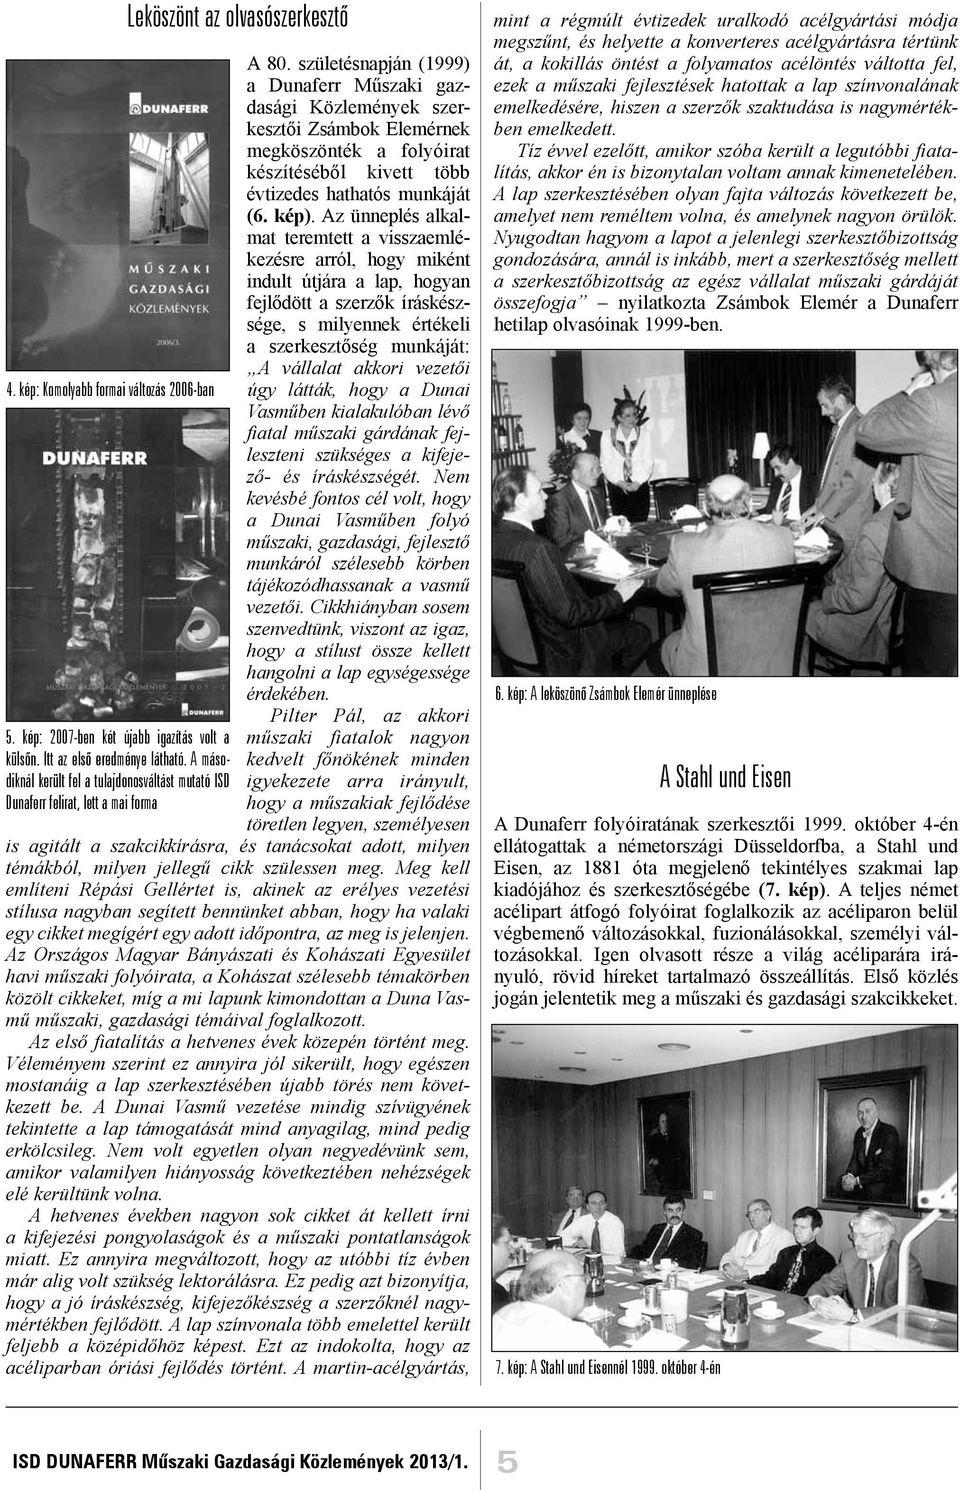 születésnapján (1999) a Dunaferr Műszaki gazdasági Közlemények szerkesztői Zsámbok Elemérnek megköszönték a folyóirat készítéséből kivett több évtizedes hathatós munkáját (6. kép).